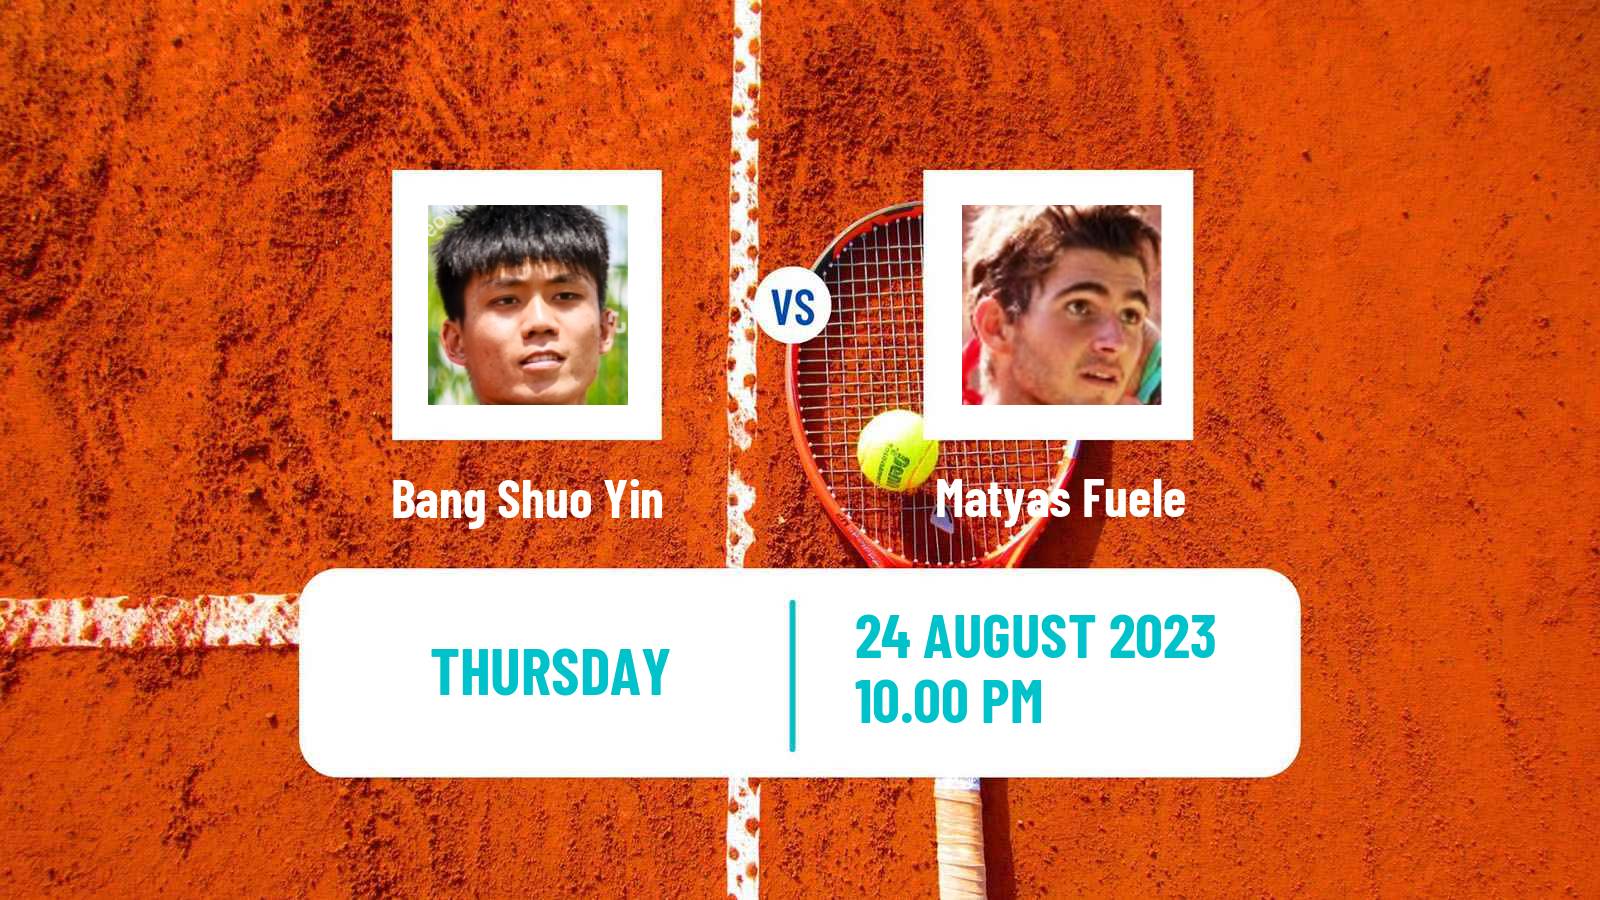 Tennis ITF M25 Tainan 2 Men Bang Shuo Yin - Matyas Fuele